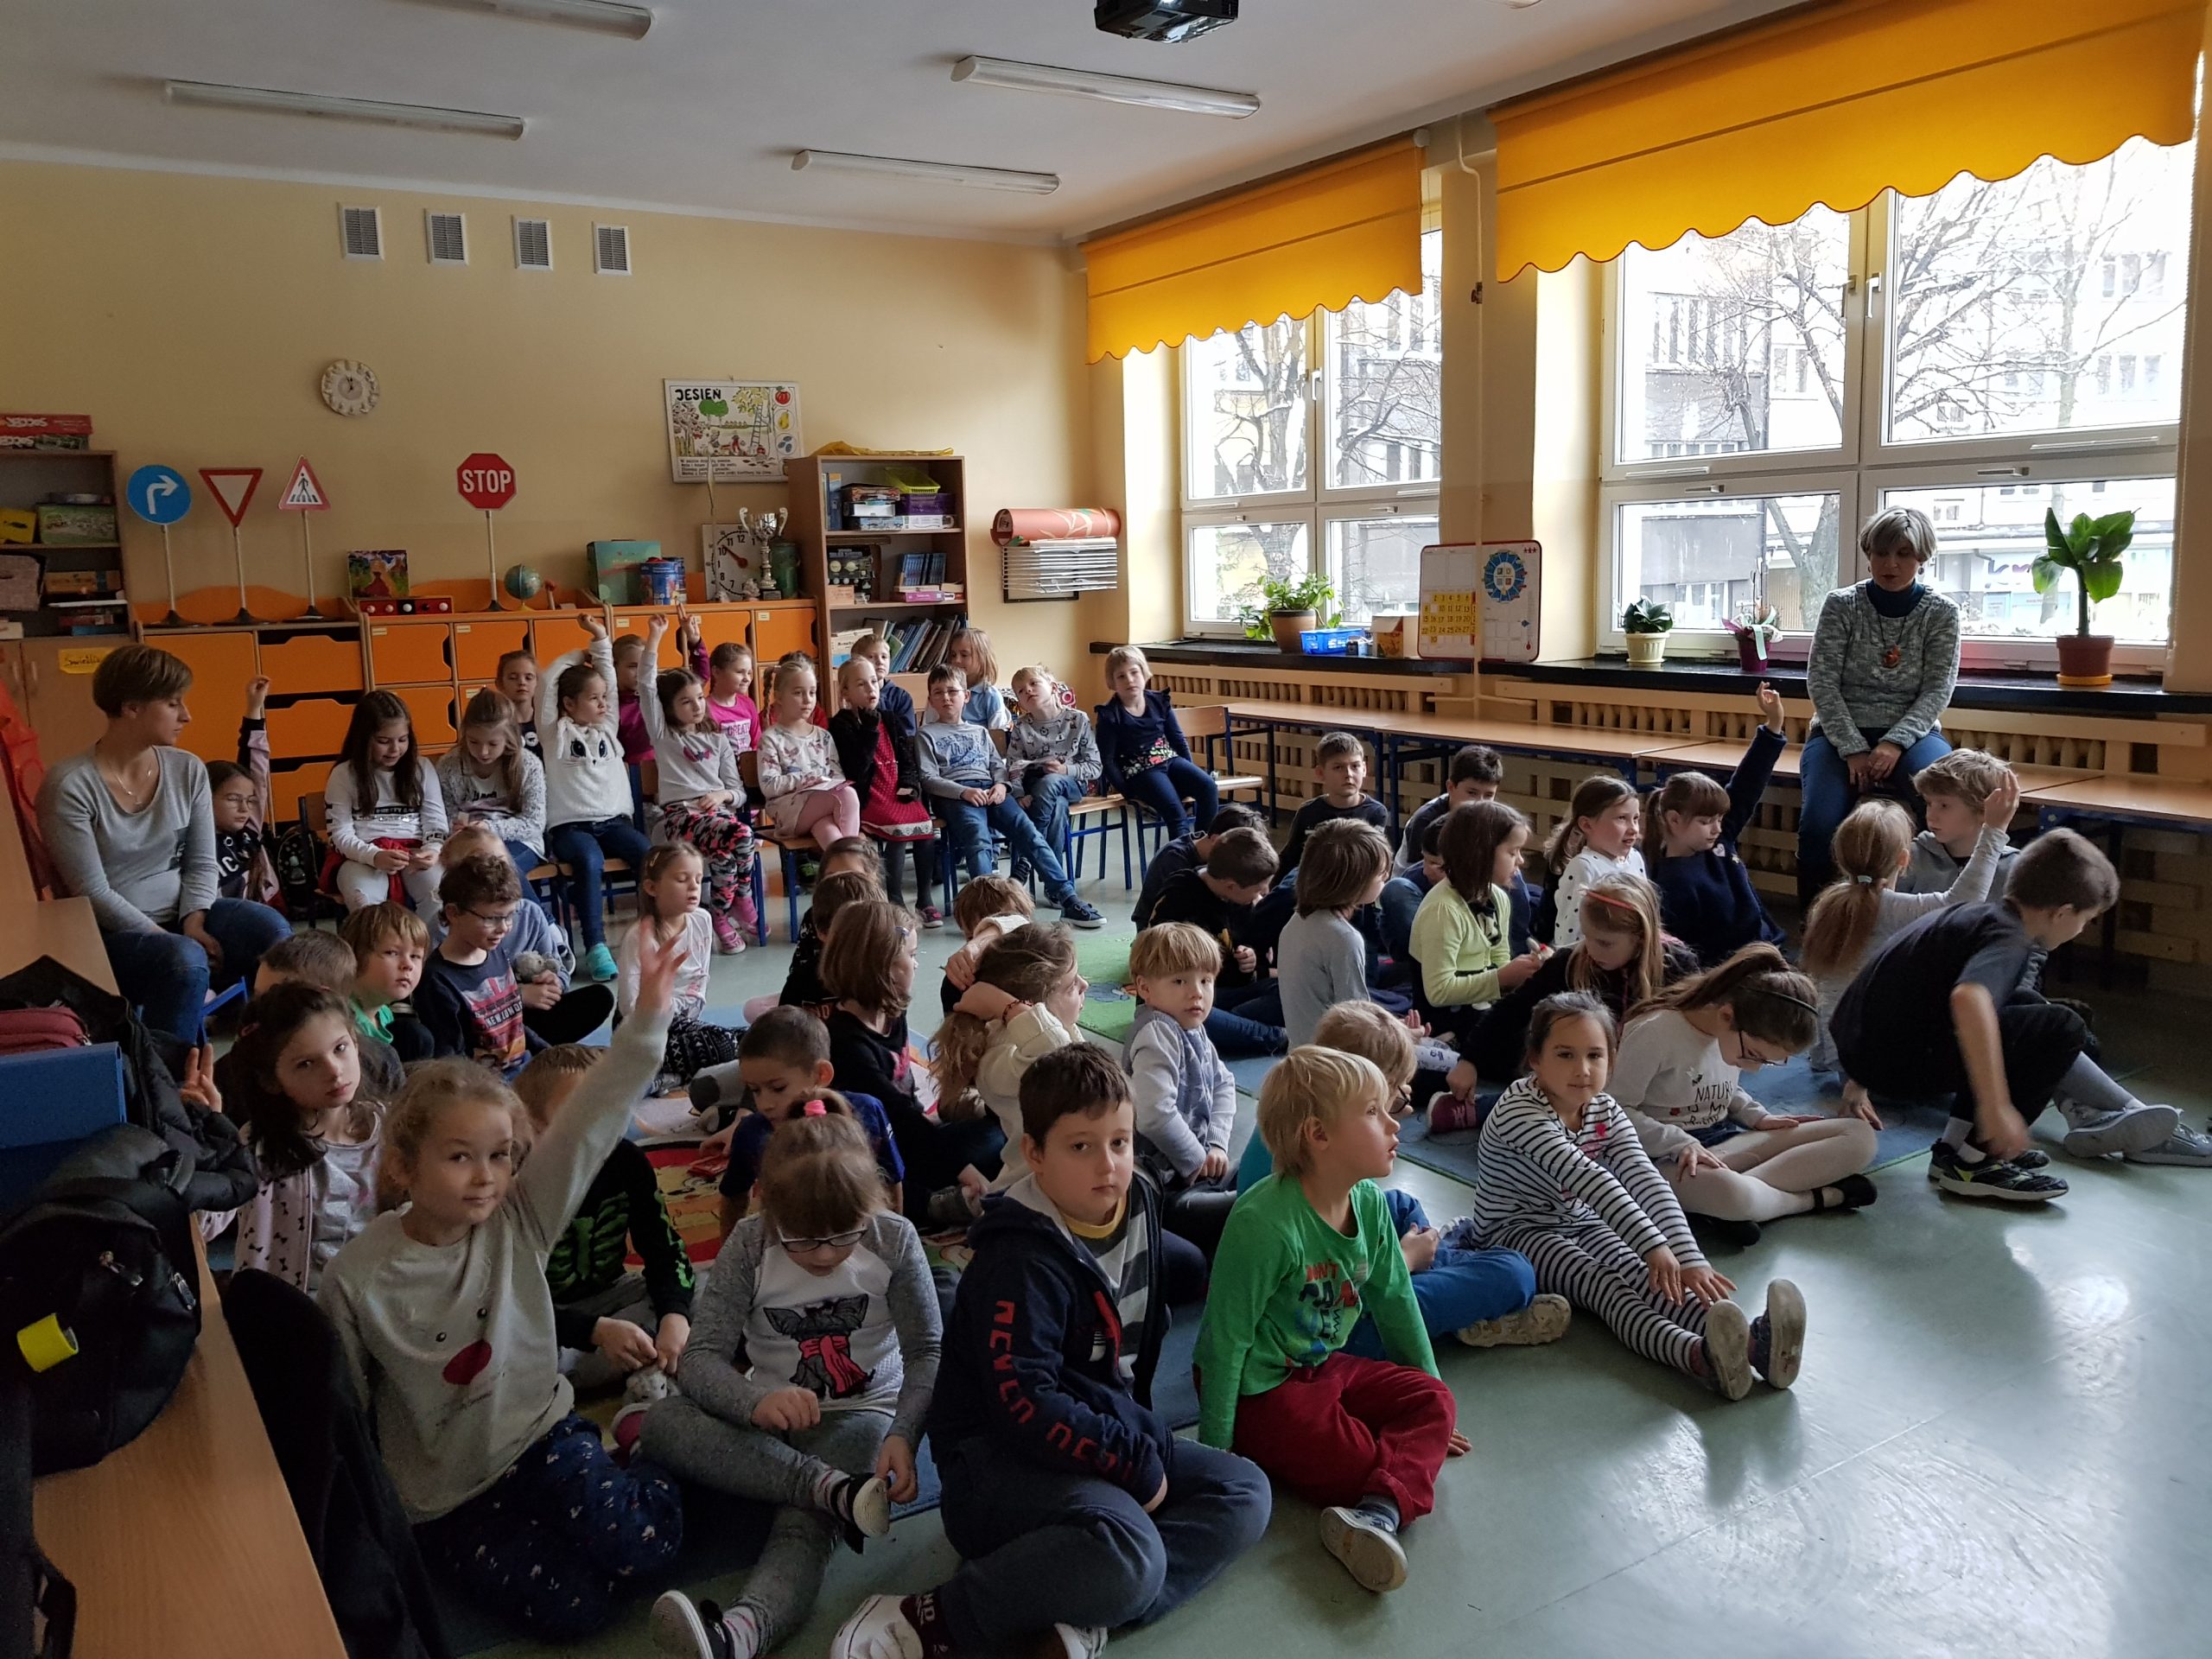 Nasze odwiedziny z lekcją edukacyjną w Szkole Podstawowej nr 22 w Bielsku-Białej